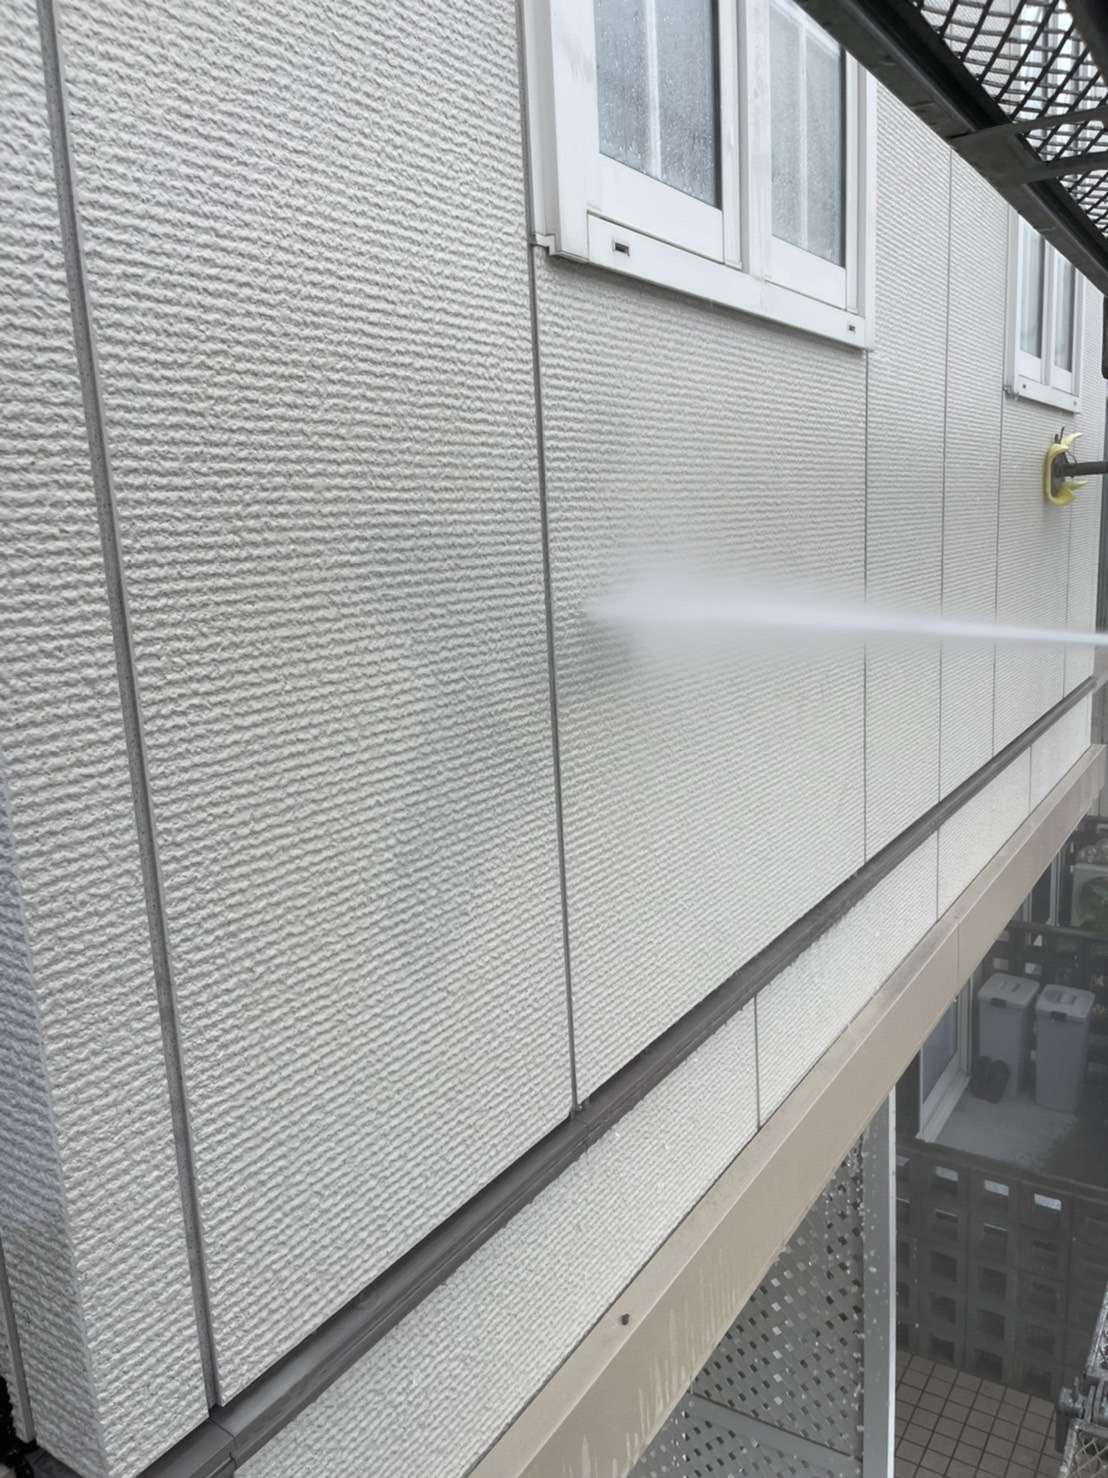 愛知県小牧市Wアパートの外壁塗装工事が始まりました😄✨